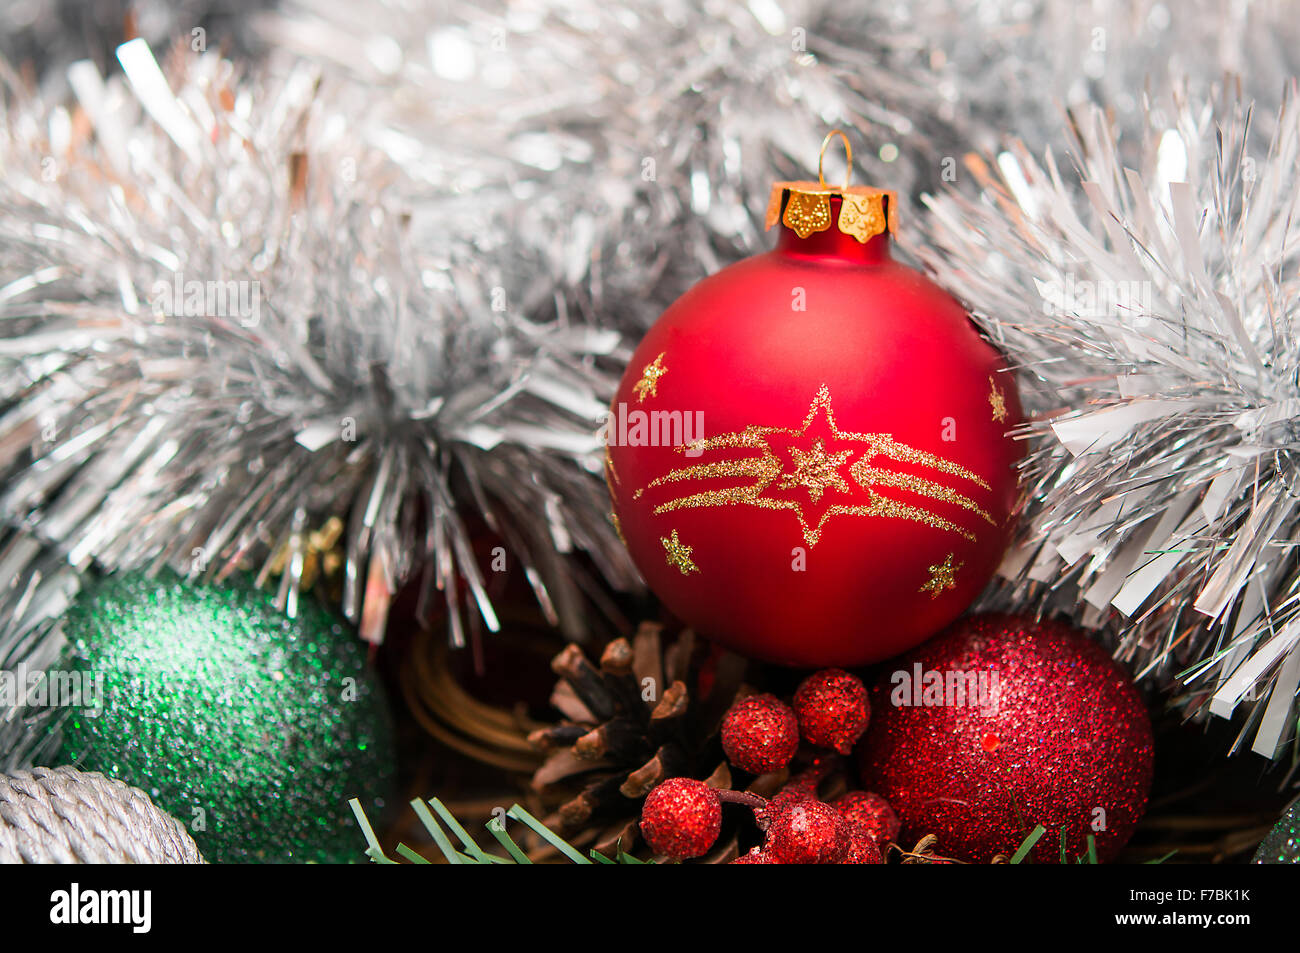 La composition de la nouvelle année avec une boule rouge et de guirlandes Banque D'Images